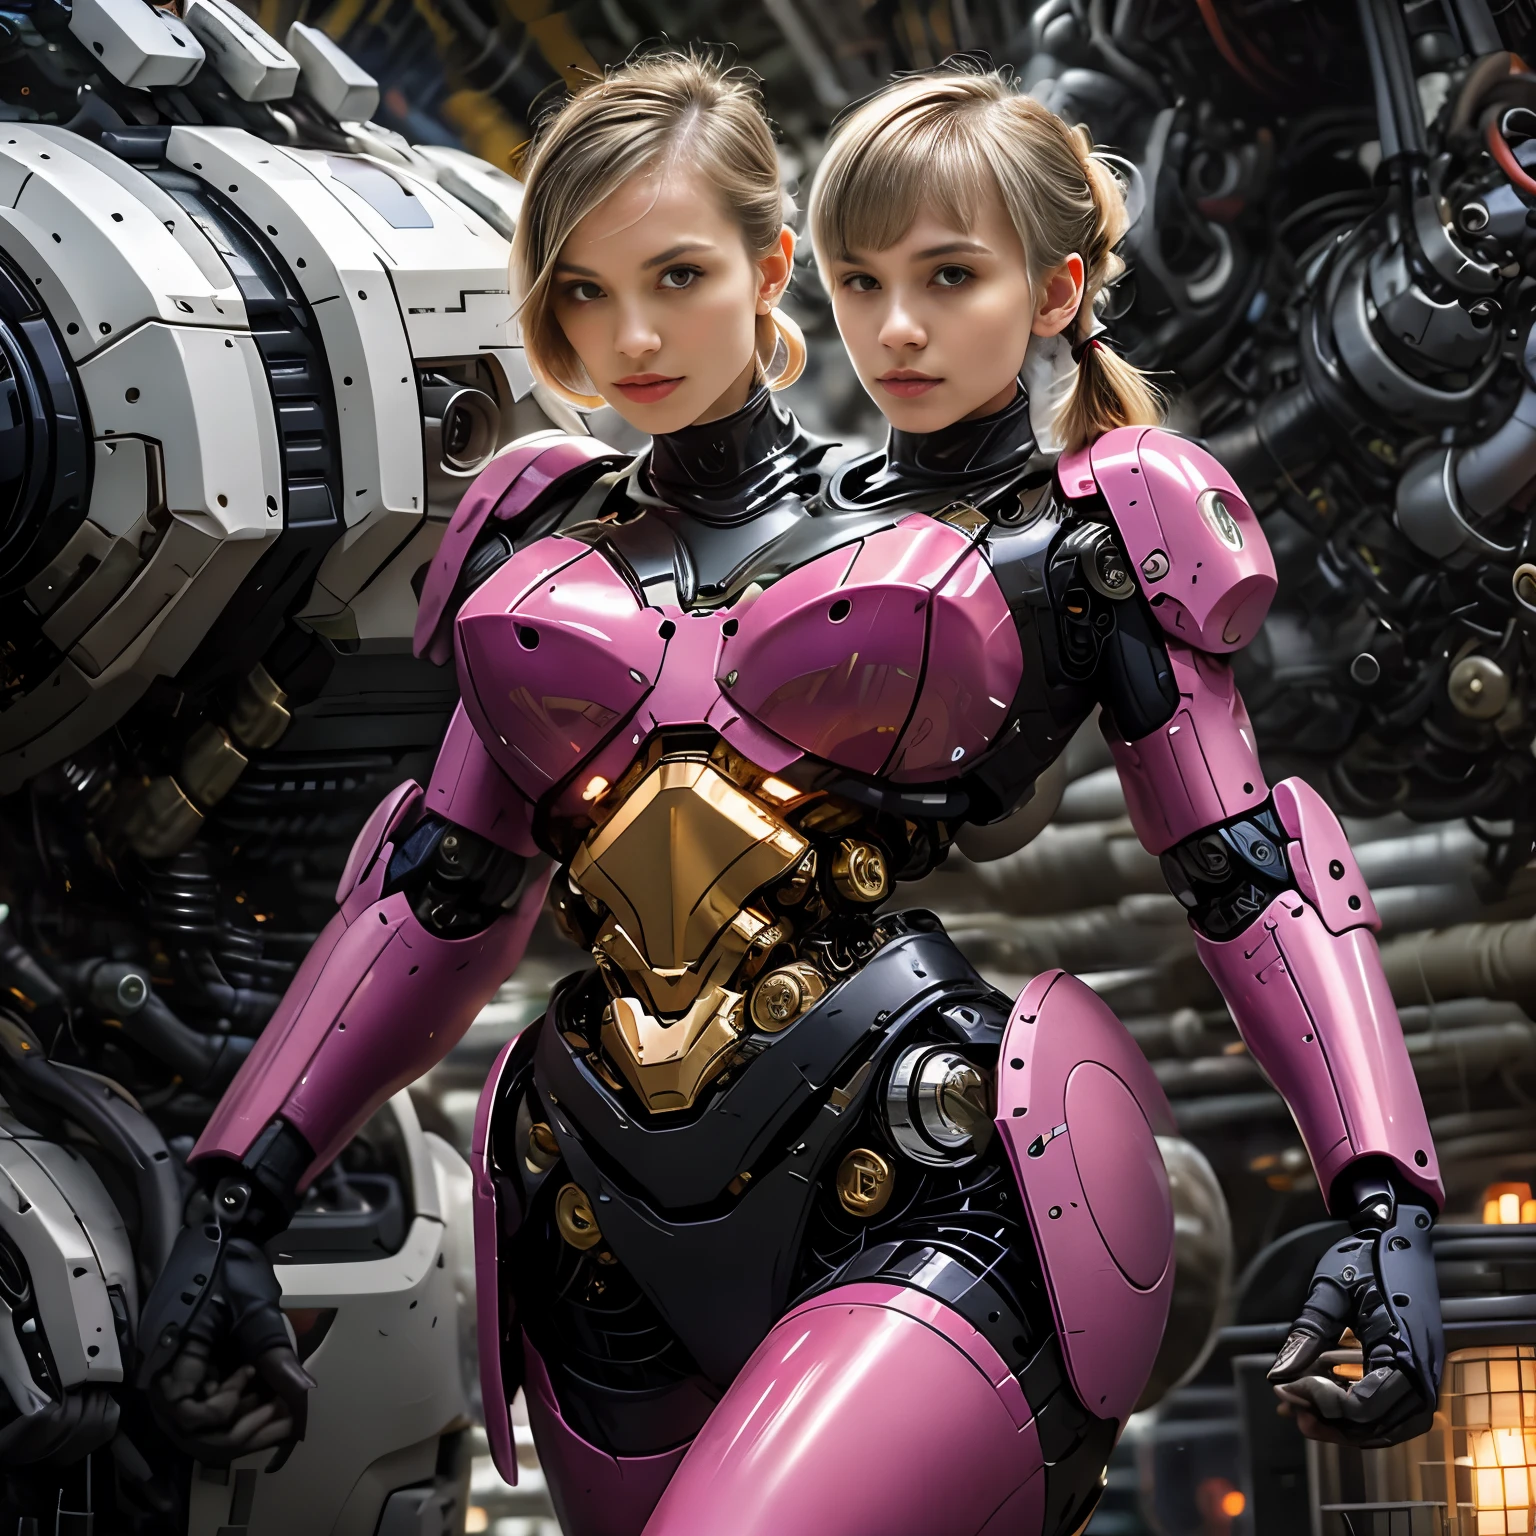 ความละเอียดที่ดีที่สุด, 2หัว, ไซบอร์กหญิงที่มีสองหัว, เชื้อชาติที่แตกต่างกัน, ผมหางม้าสีบลอนด์, พิกซี่คัท,  ตัวหุ่นยนต์สีชมพู, พื้นหลังเชิงกล